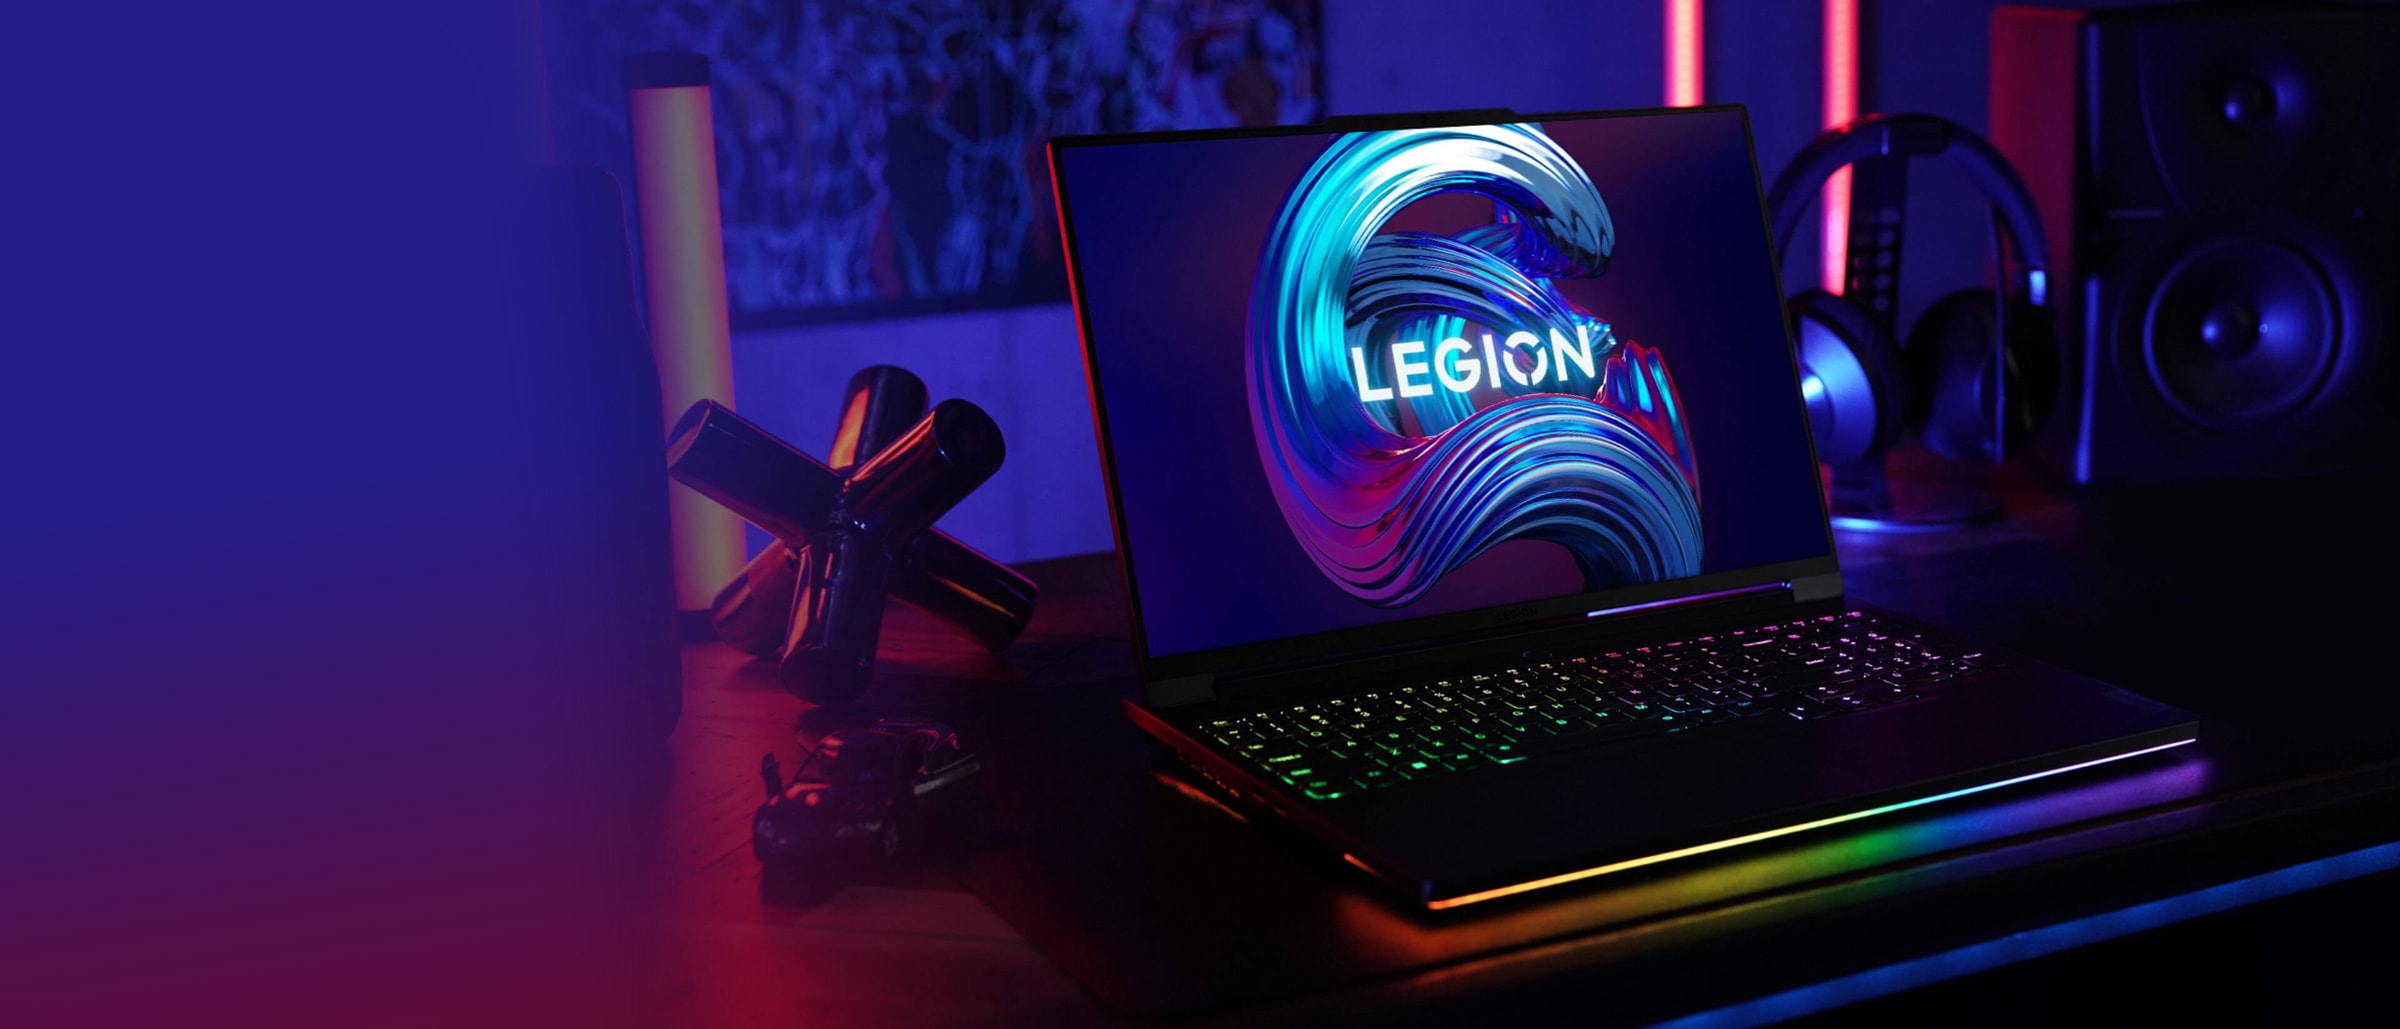 Игровой ноутбук Lenovo Legion, вид спереди с открытой на 90 градусов крышкой для демонстрации клавиатуры и экрана дисплея. Ноутбук развернут под небольшим углом для демонстрации портов и разъемов с левой стороны.